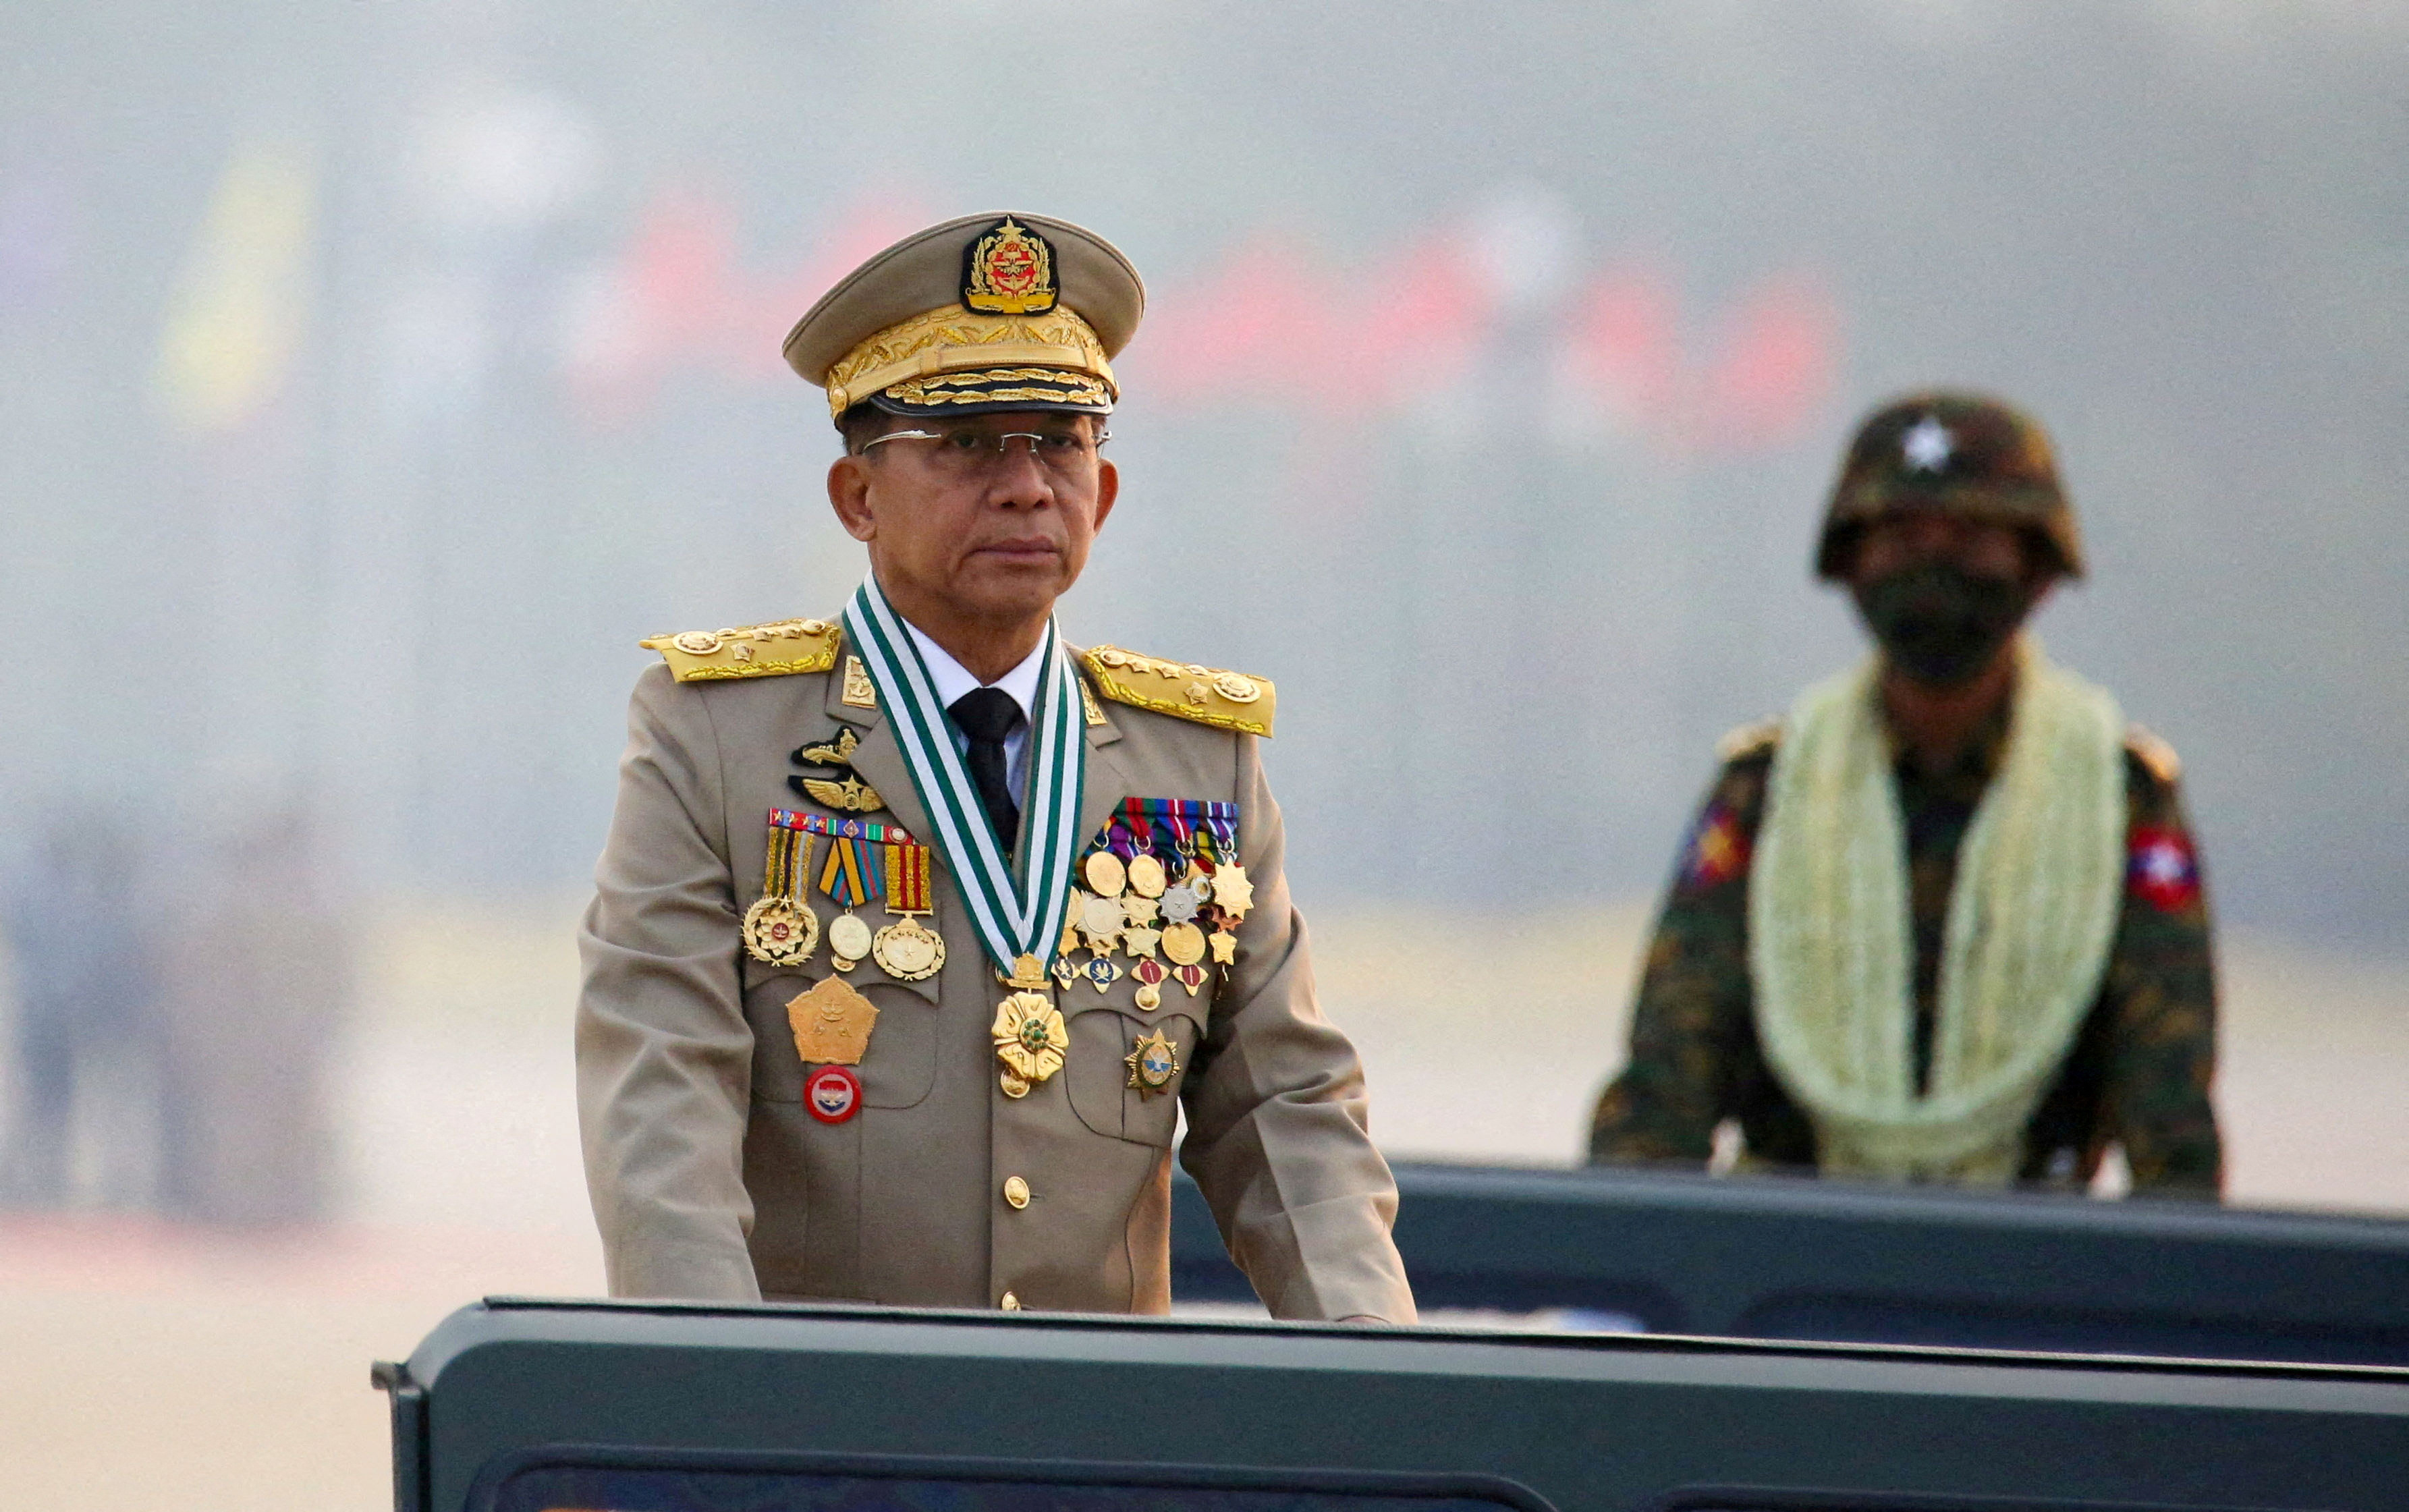 El jefe de la junta de Myanmar, el general superior Min Aung Hlaing, que derrocó al gobierno elegido en un golpe de Estado el 1 de febrero de 2021, preside un desfile del ejército en el Día de las Fuerzas Armadas en Naypyitaw, Myanmar, el 27 de marzo de 2021. REUTERS/Stringer/Archivo